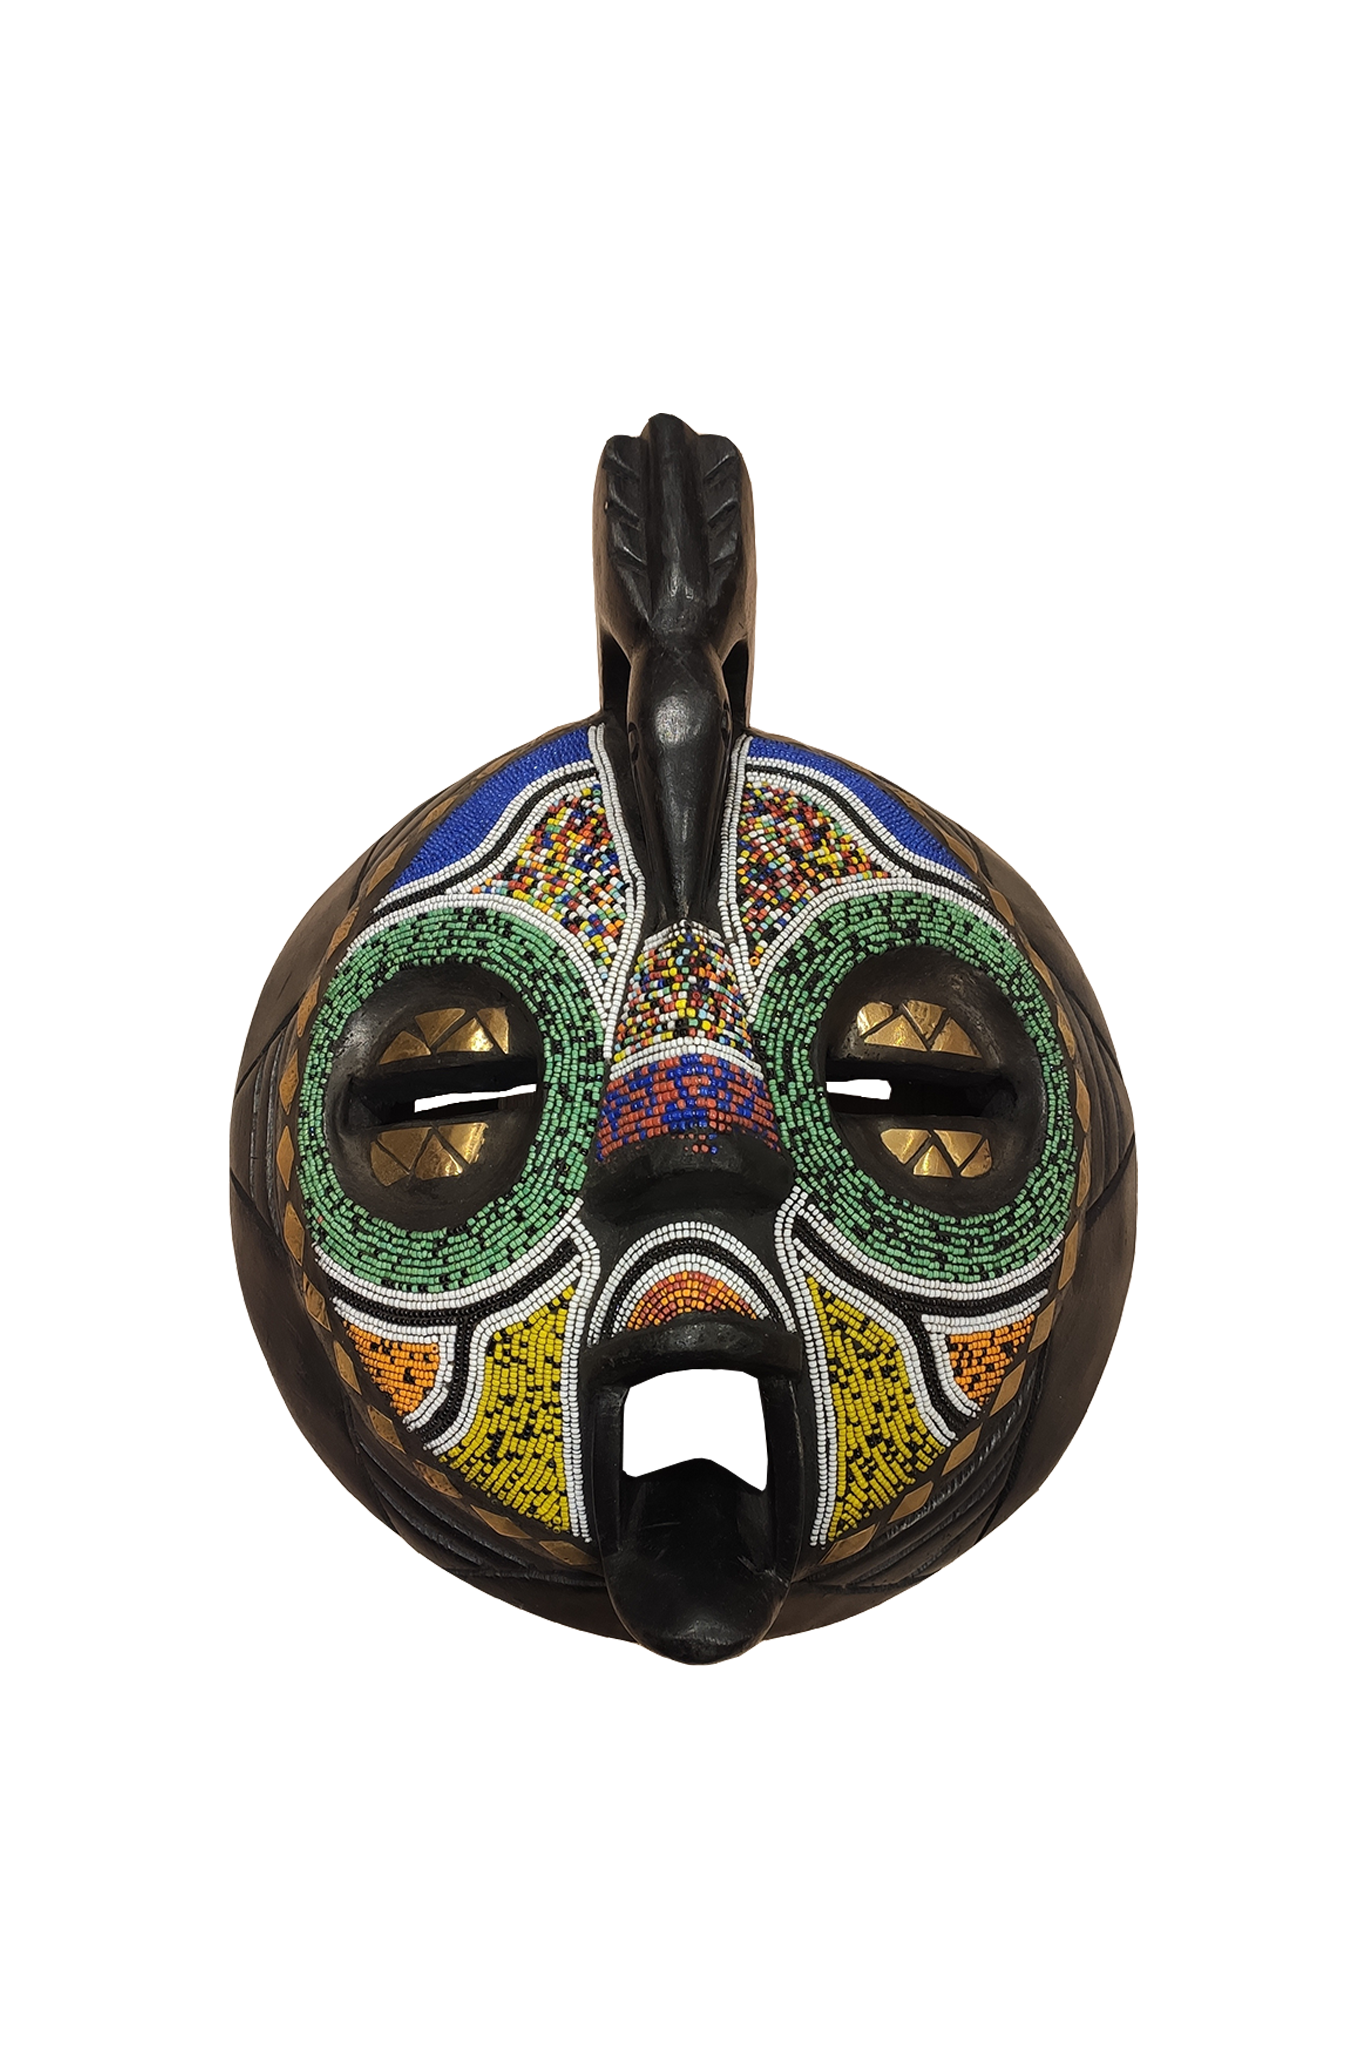 Masque coloré traditionnel africain 